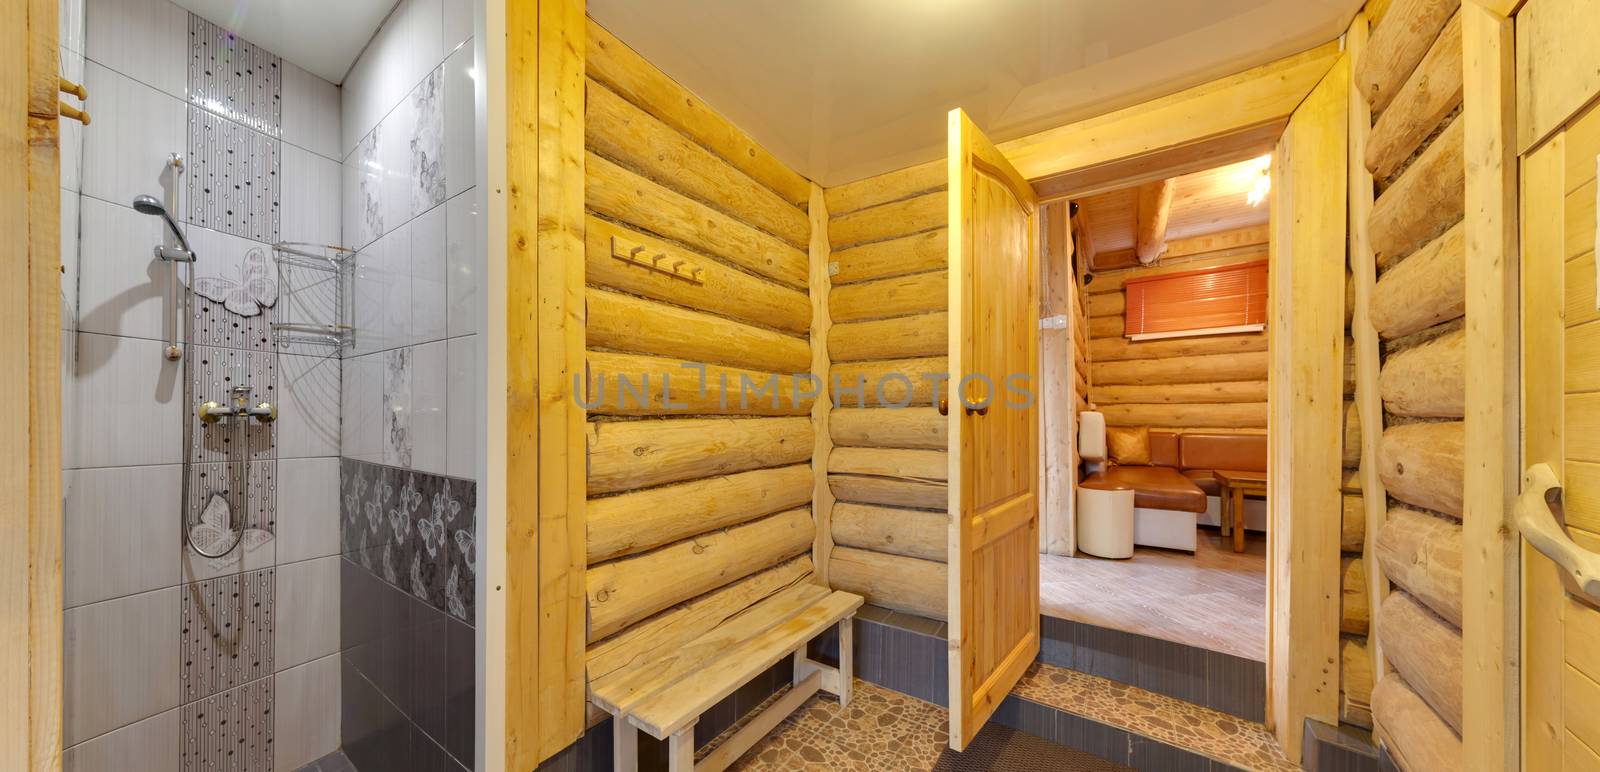 shower cabin in a sauna by sveter